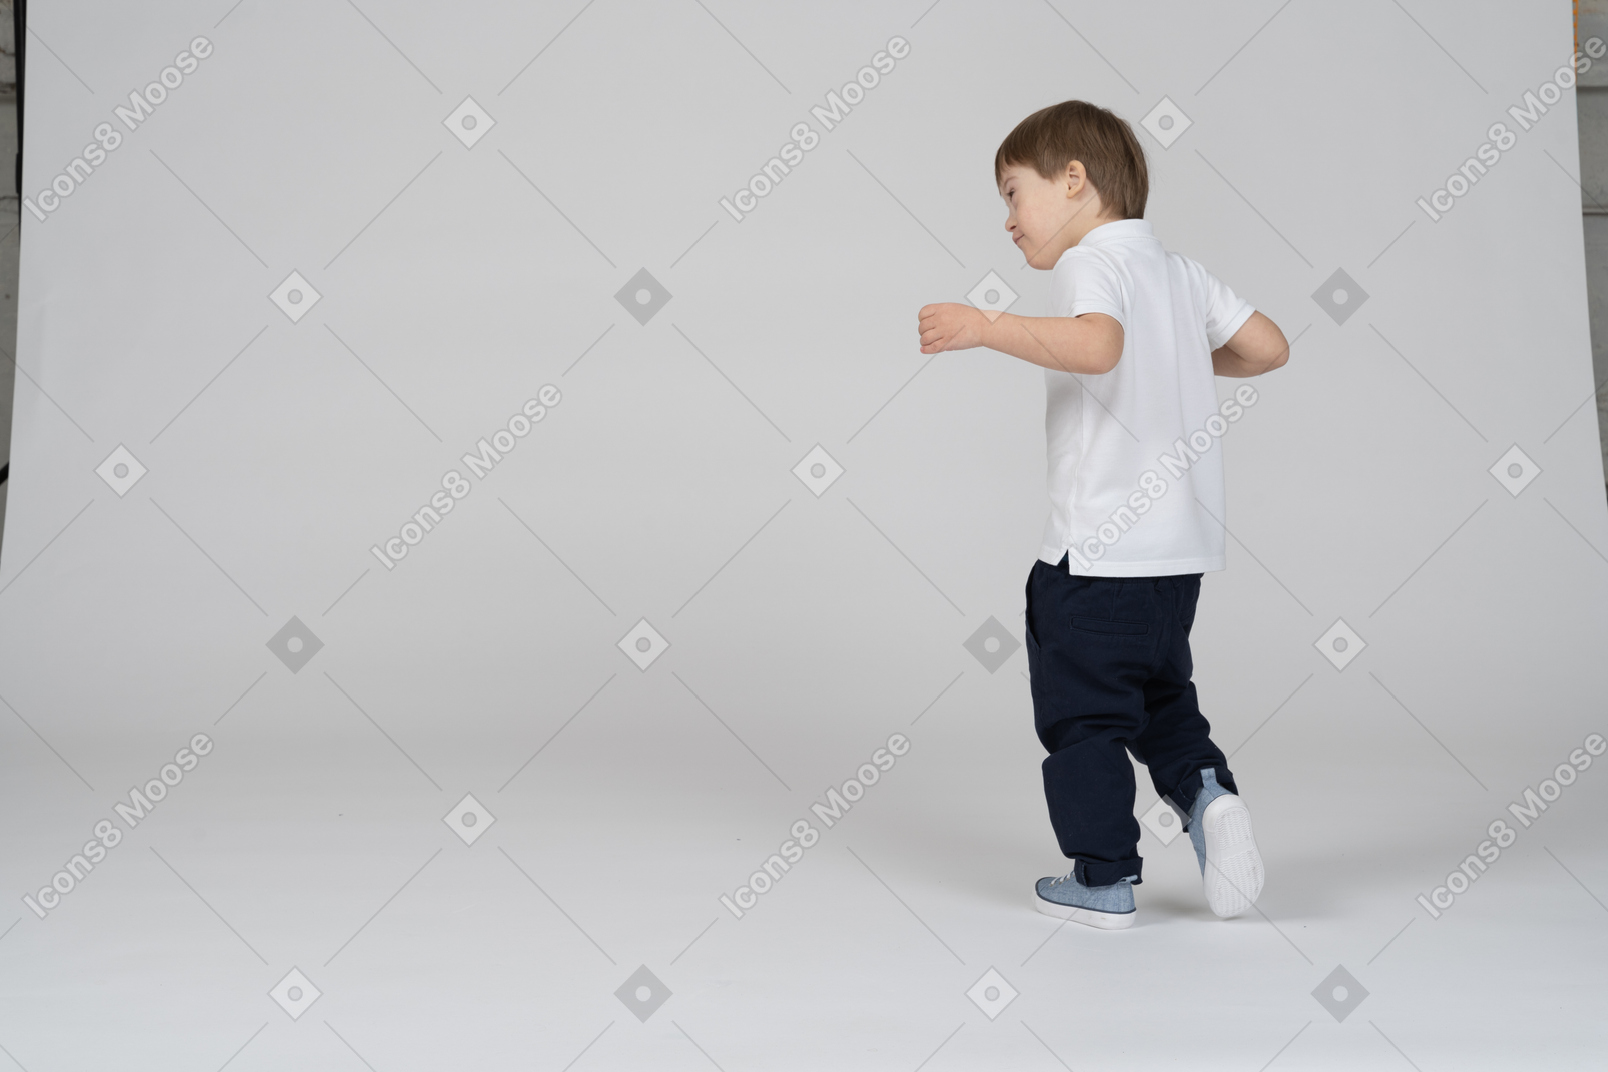 Vista posteriore di tre quarti di un ragazzo che fa un passo avanti con le mani alzate leggermente